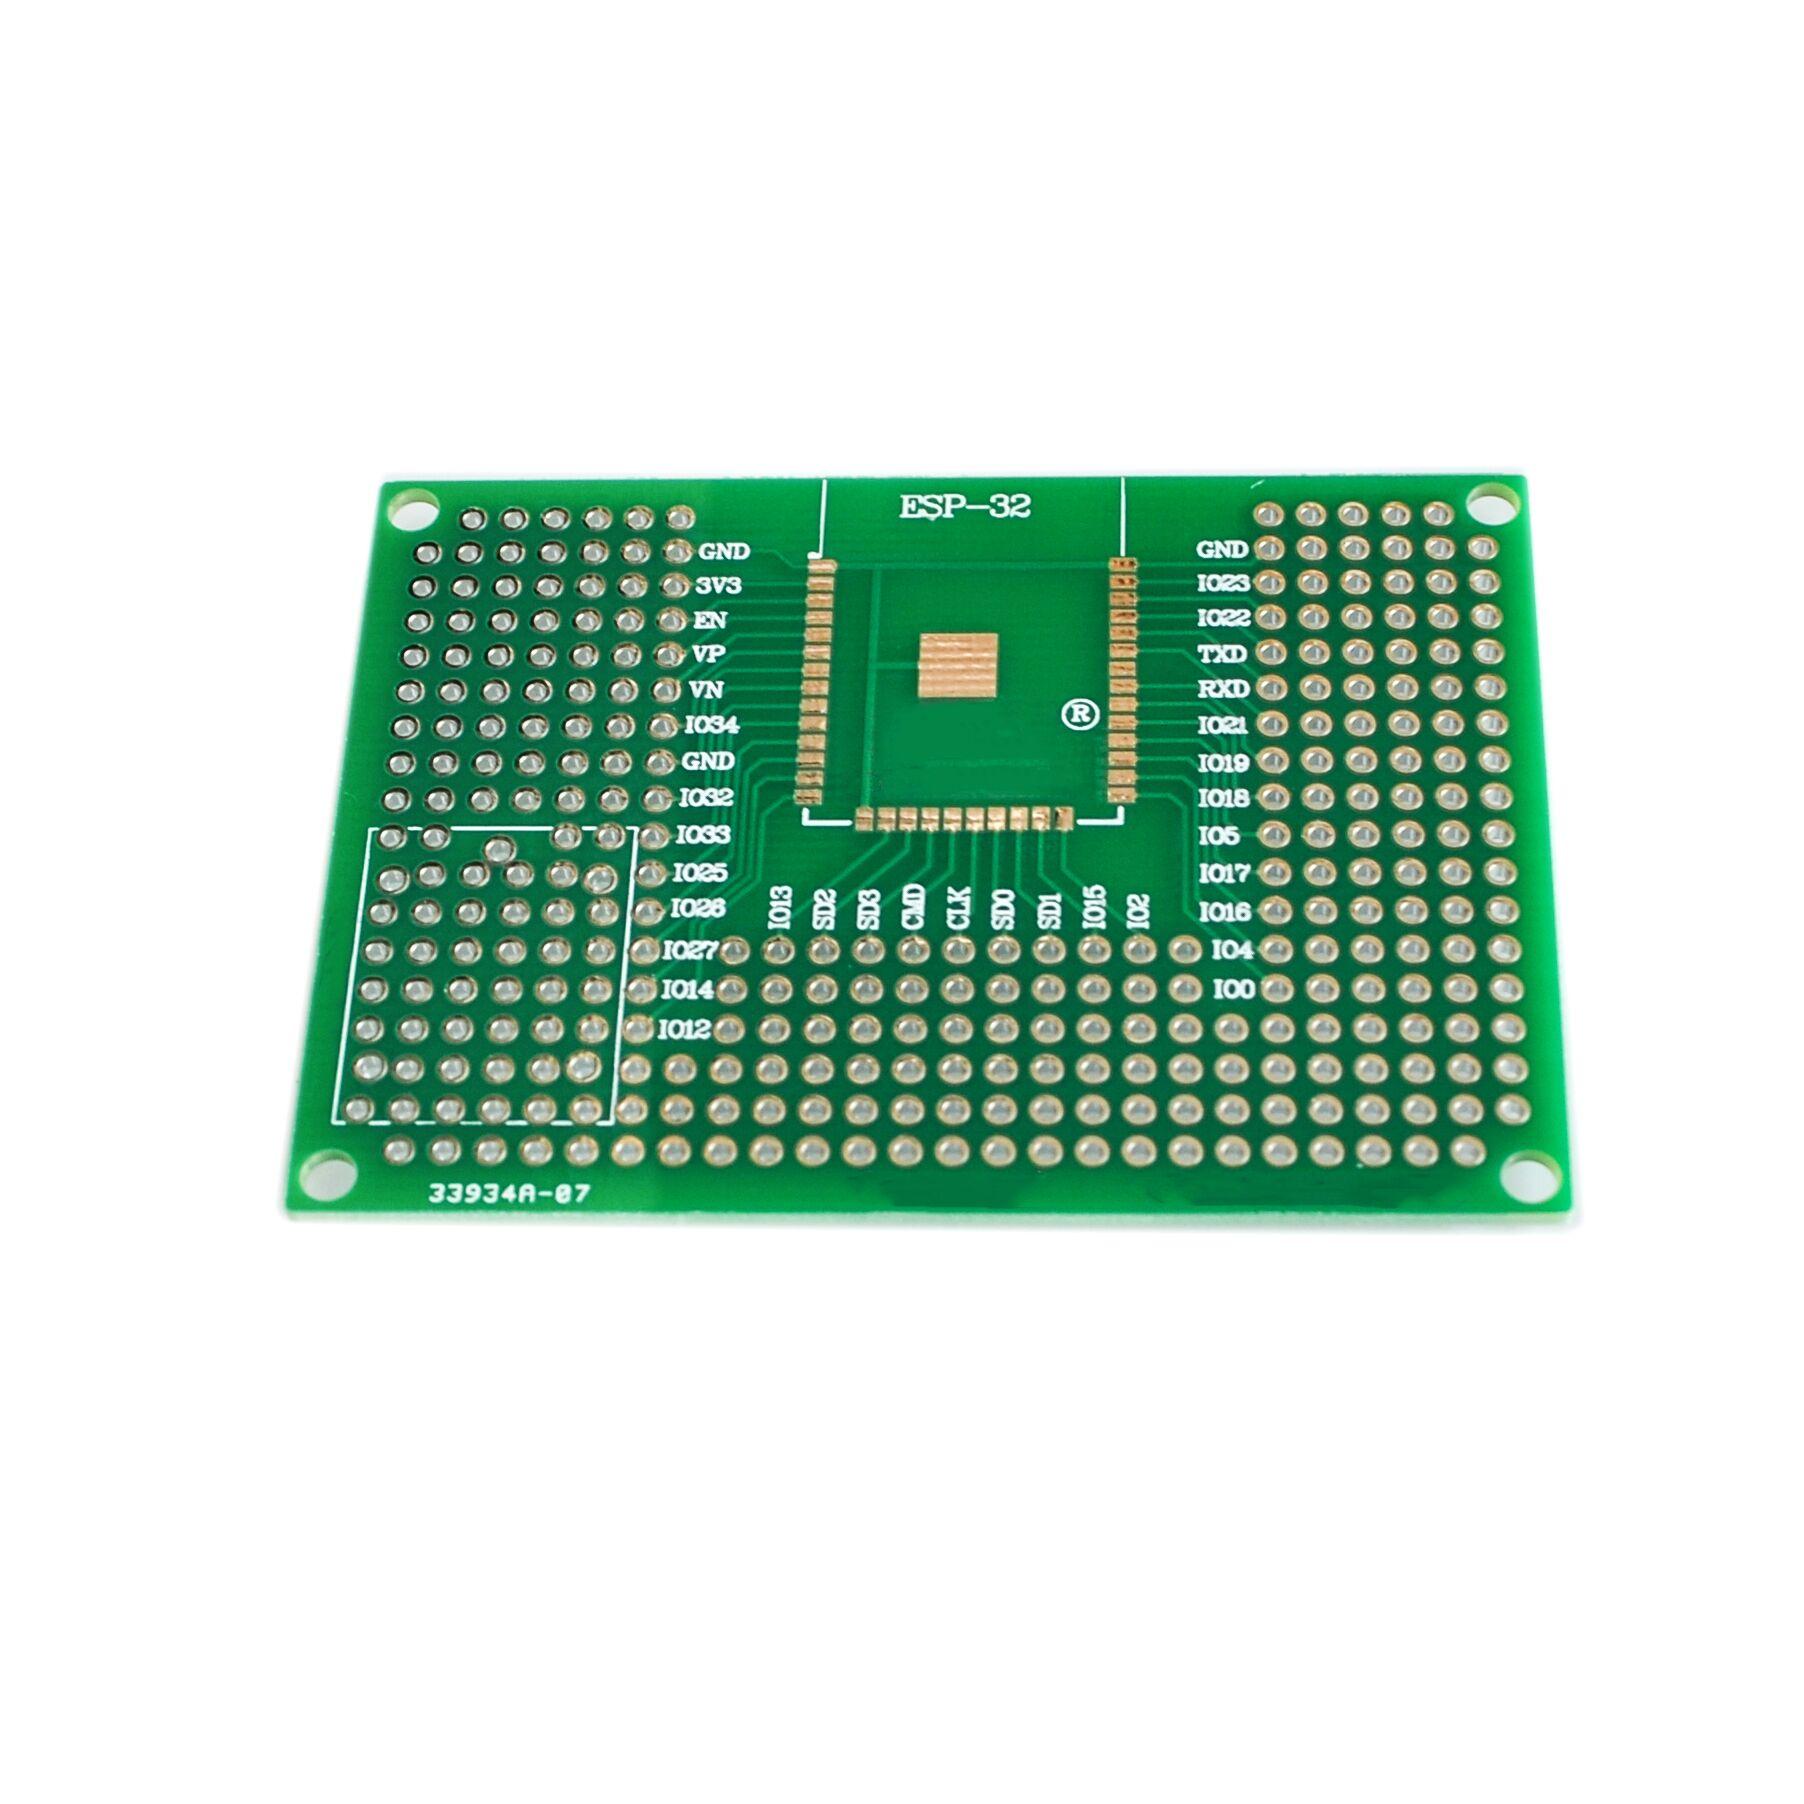 10PCS/LOT 5X7CM Double Side Prototype PCB Breadboard Universal Board For Arduino UNO R3 ESP8266 WIFI ESP-12F ESP-12E ESP32S 32